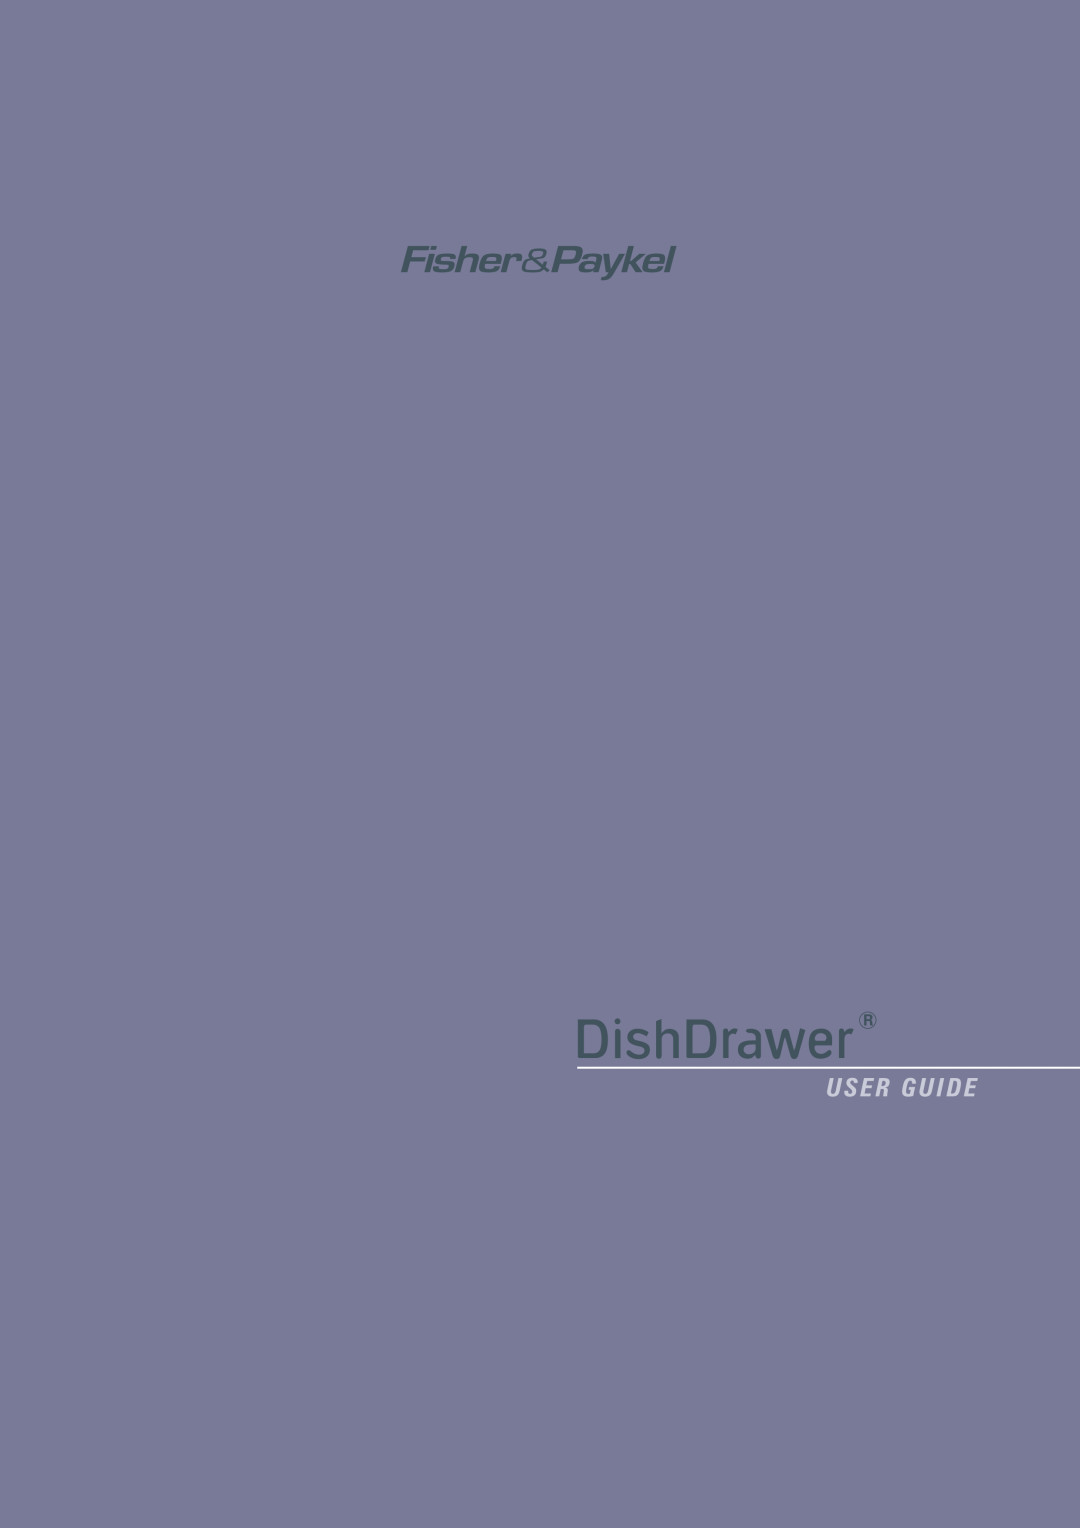 Fisher & Paykel DishDrawer manual U S E R G U I D E 